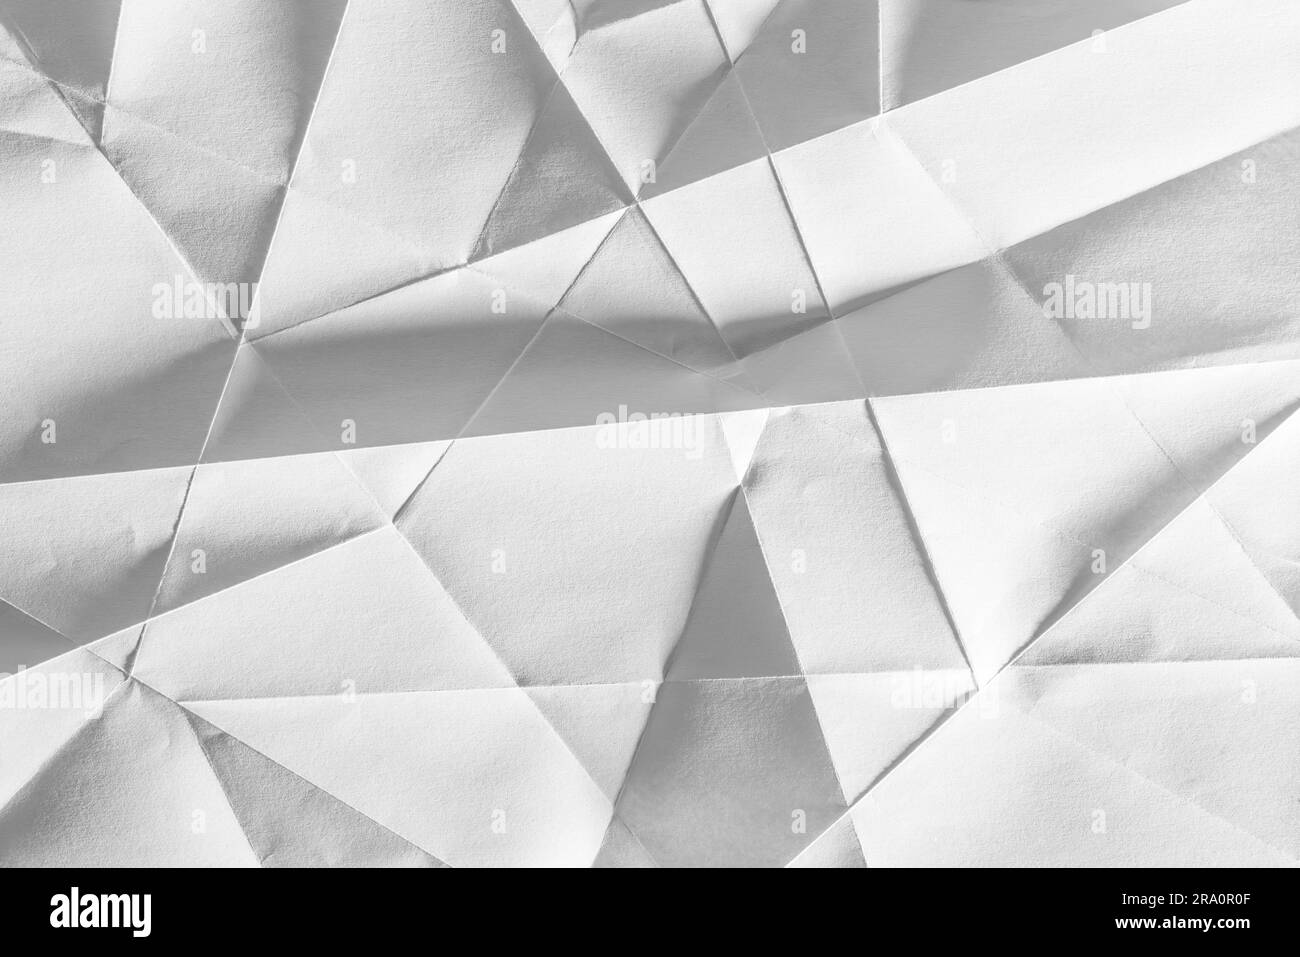 Weißes gefaltetes Blatt Papier zeigt eine abstrakte Textur-Design unter der hellen Streifen. Gut als Hintergrund verwenden Stockfoto